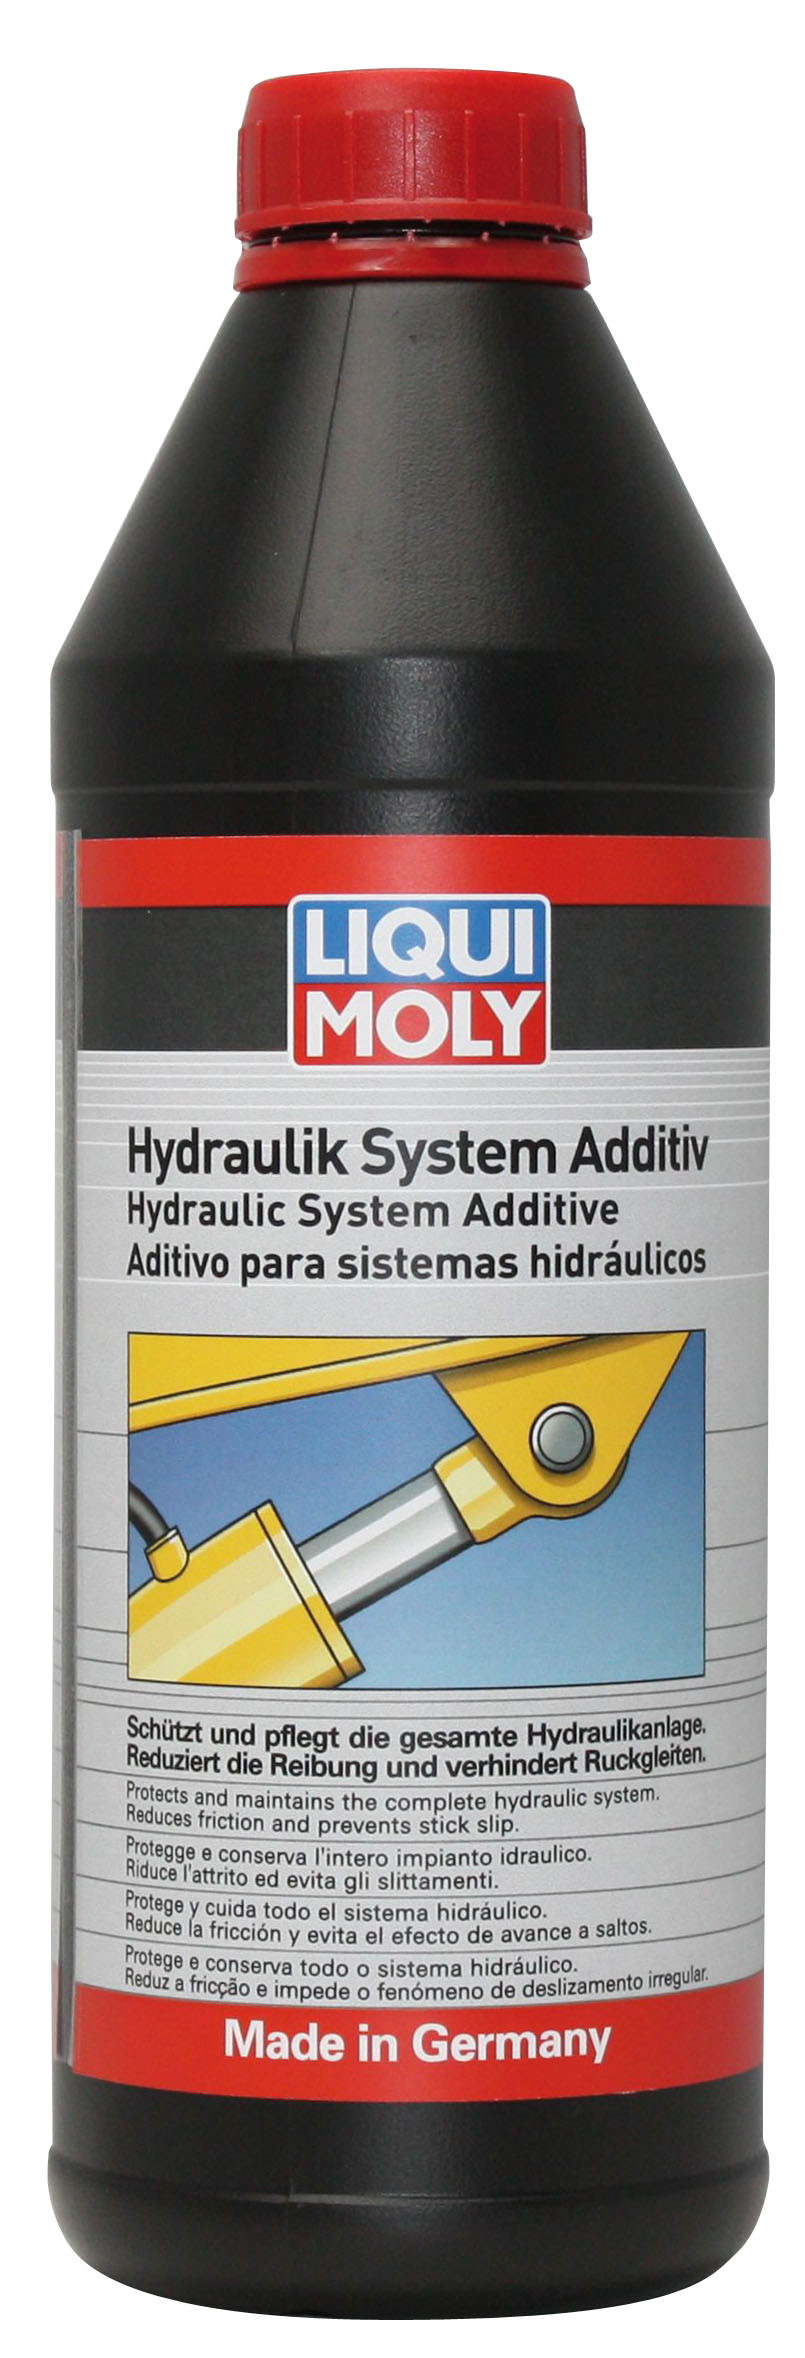 Присадка для гидравлических систем Liqui Moly Hydraulik System Additiv 1л